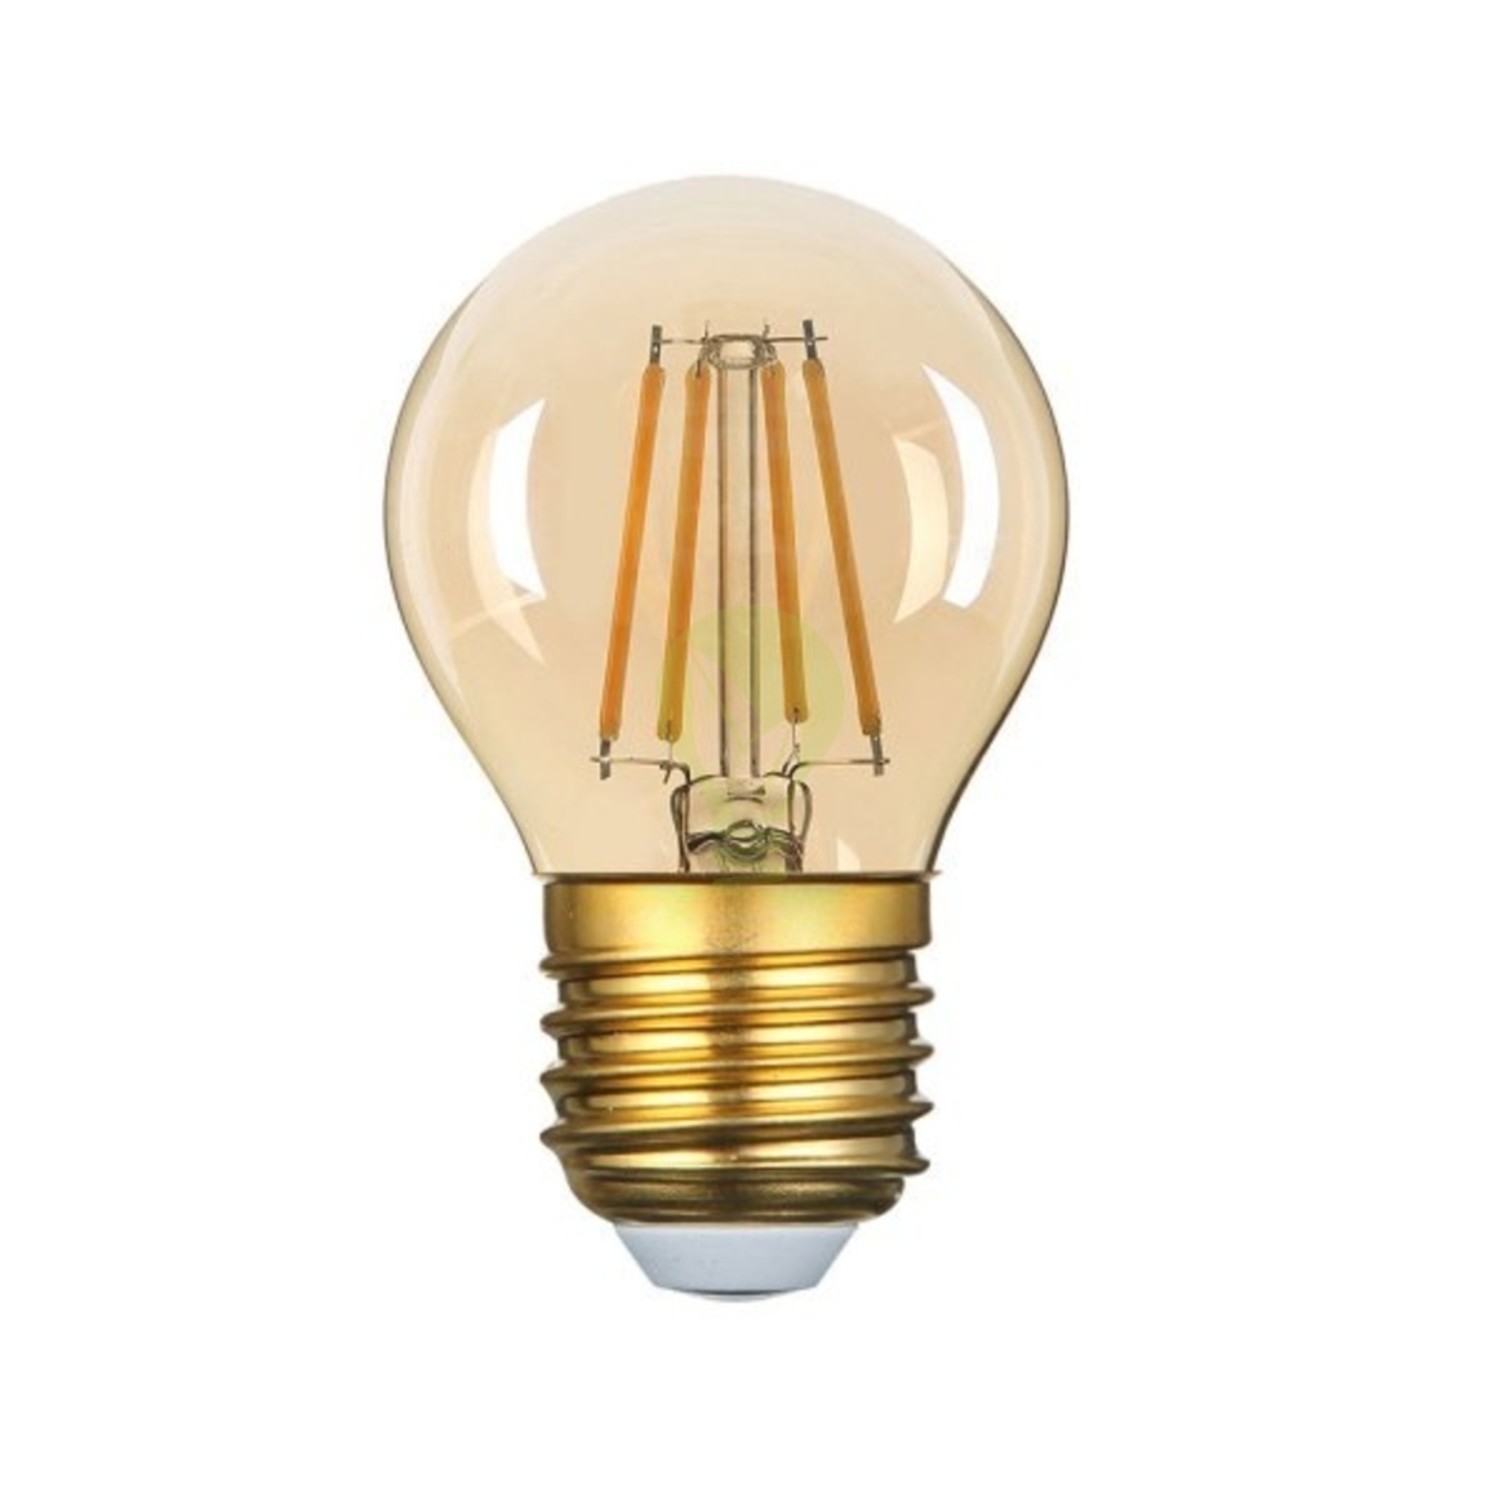 Knuppel Contract Typisch LED Filament lamp dimbaar - E27 G45 - 4W - 2200K - Ledlichtdiscounter.nl